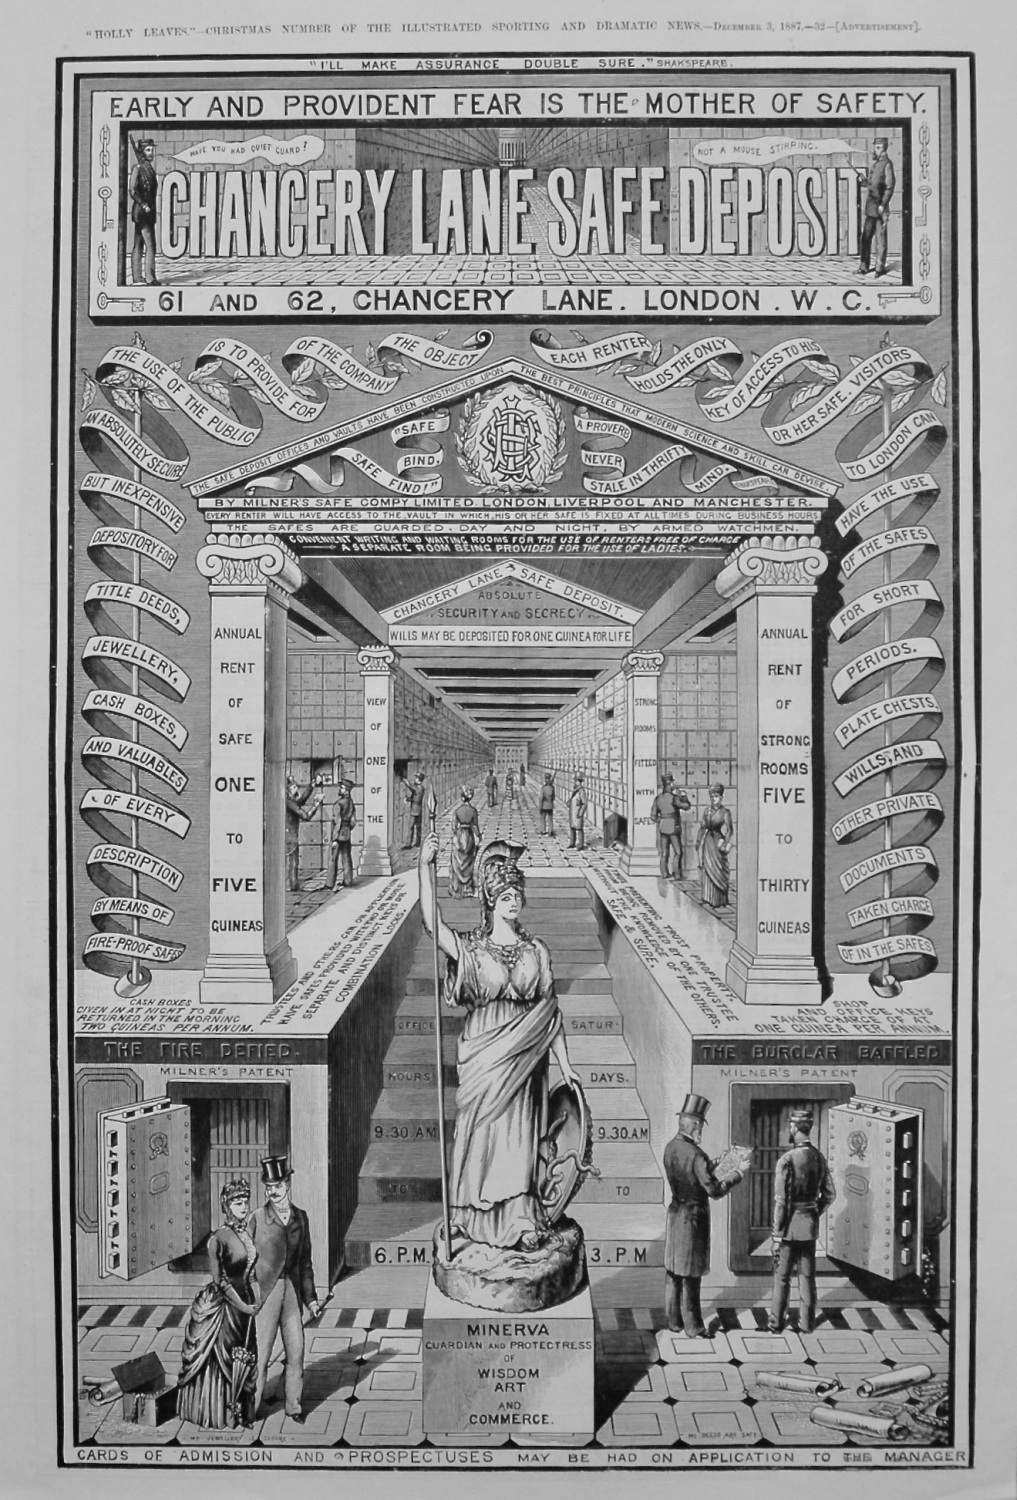 Chancery Lane Safe Deposit. 1887